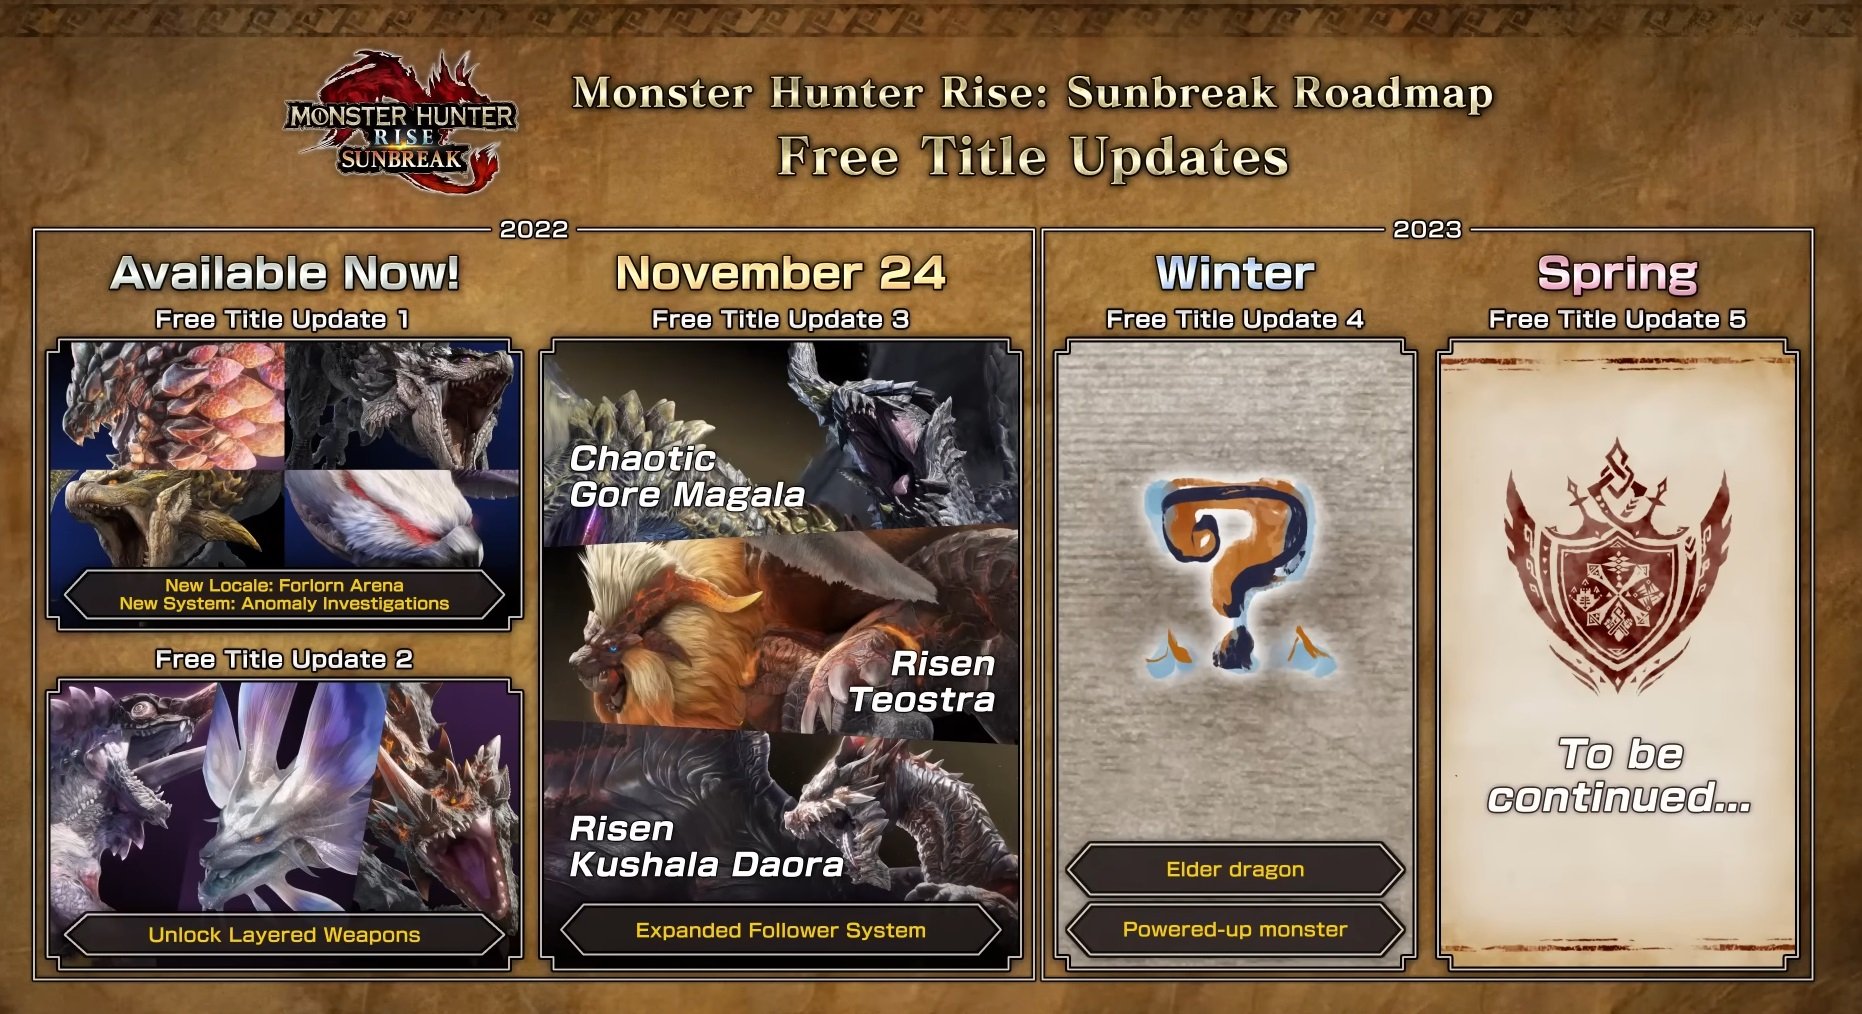 Monster Hunter Rise 2023 roadmap Techno Blender